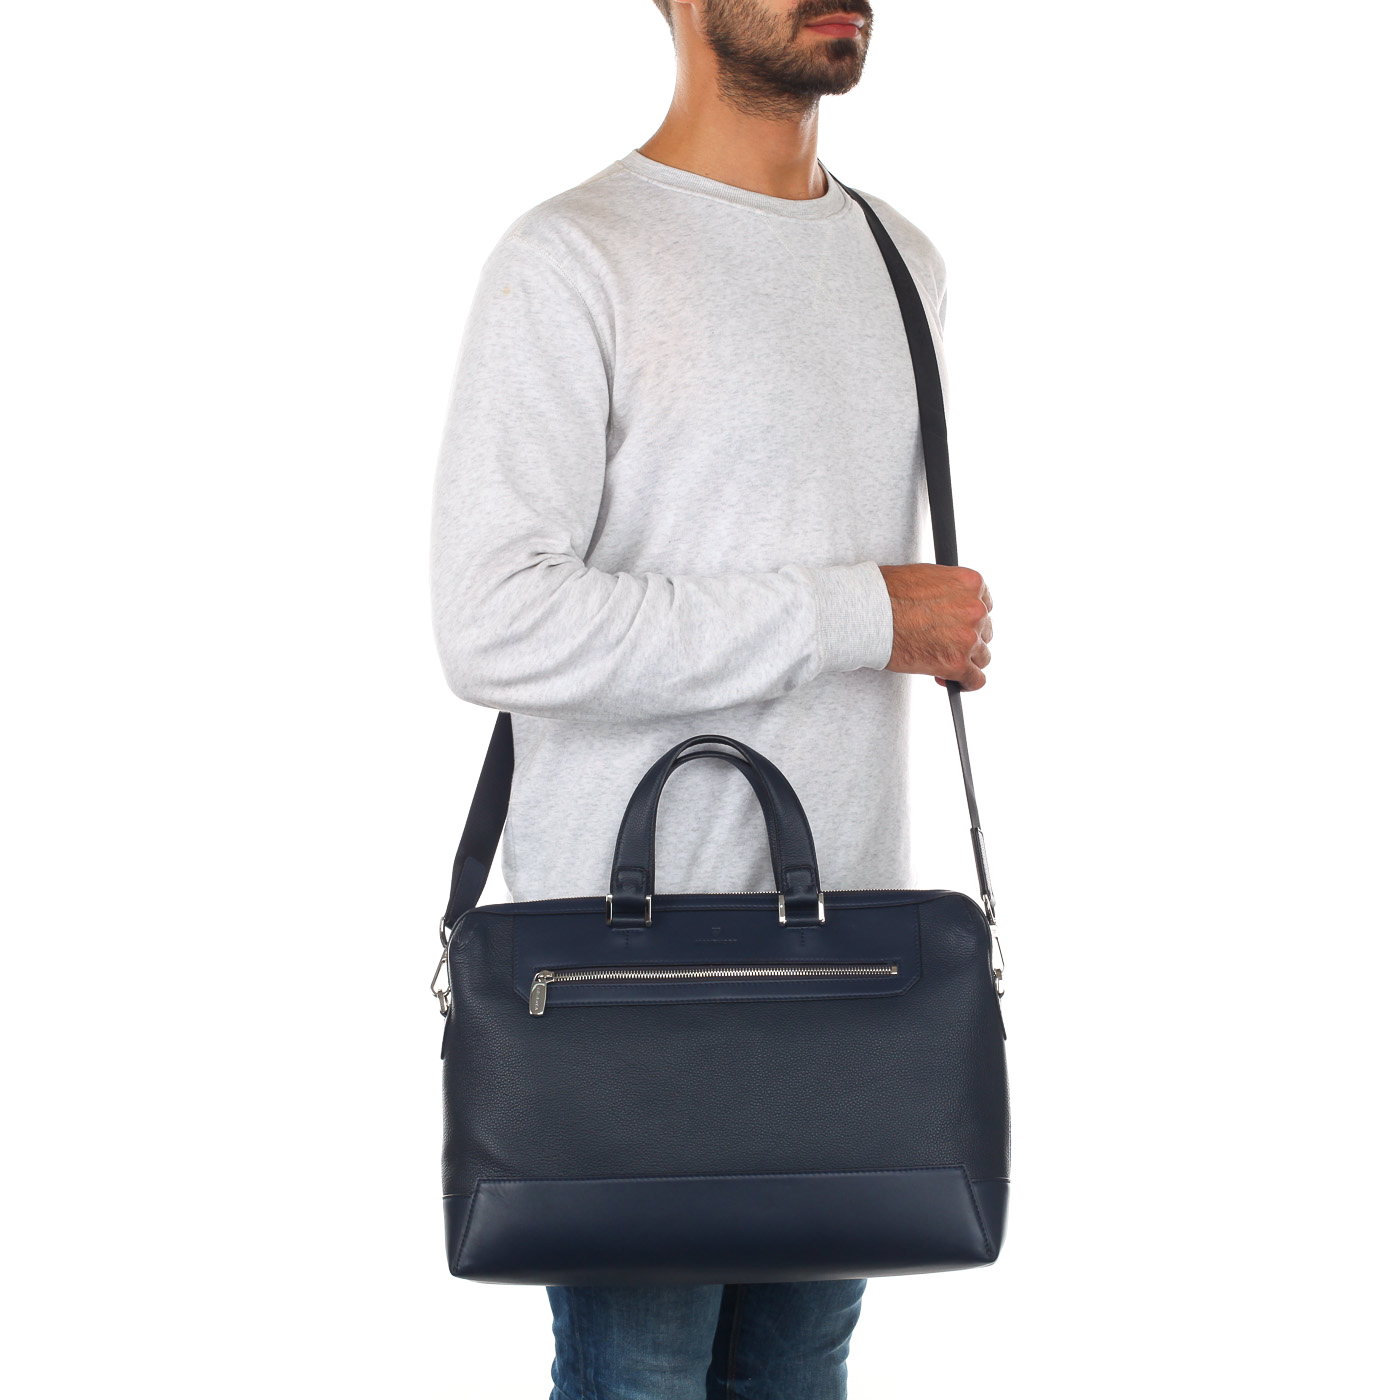 Мужская деловая сумка из зернистой кожи с плечевым ремешком Mayrhoff Berlin